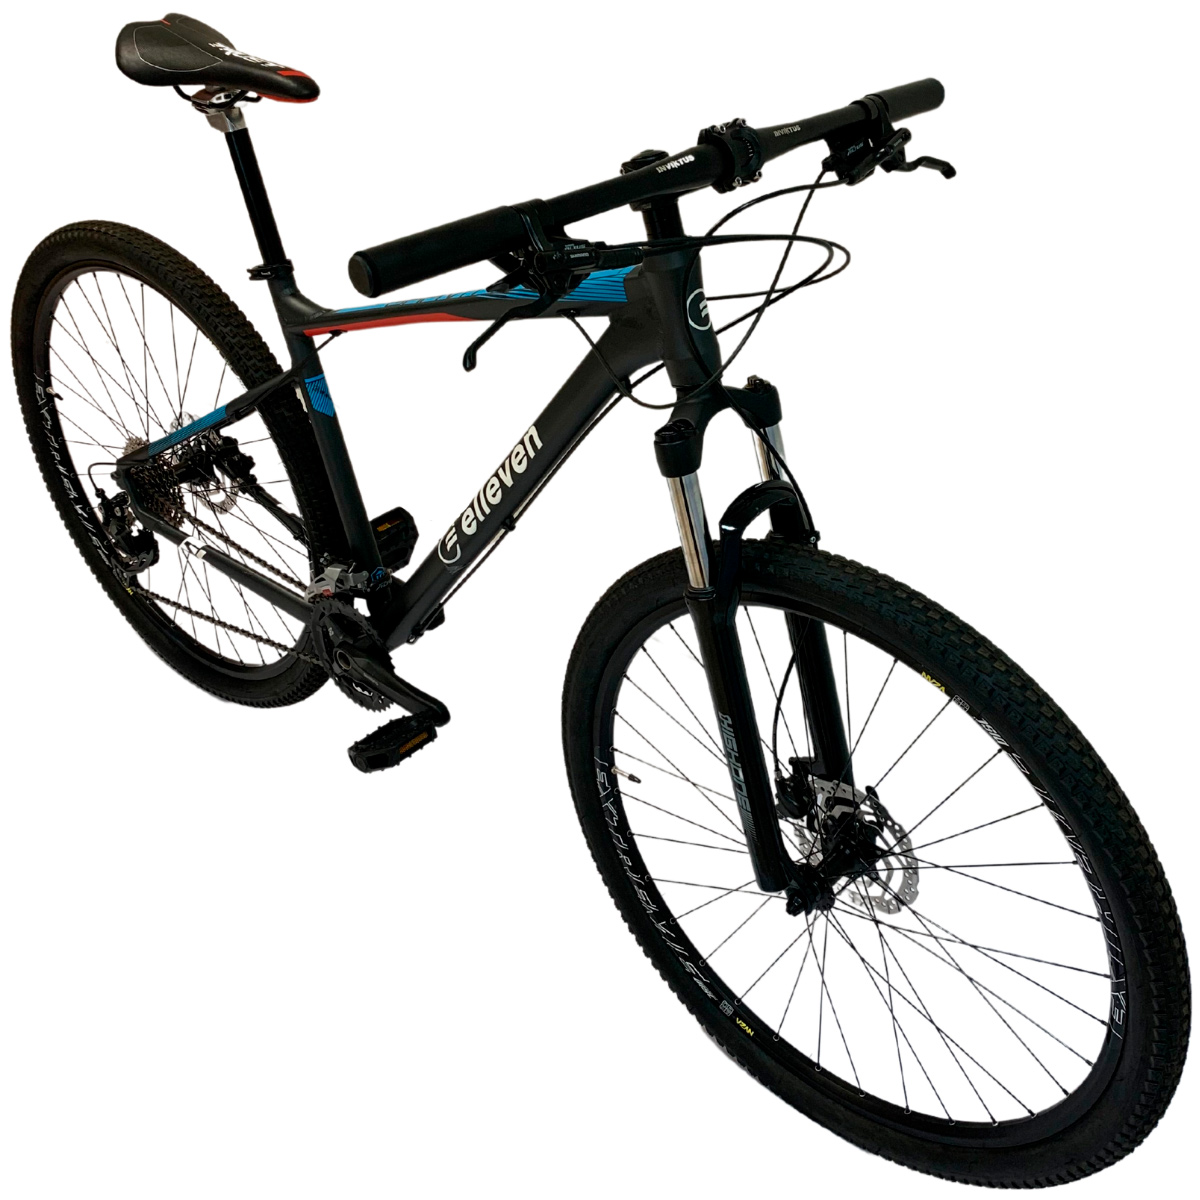 Bicicleta Elleven Gravity Alumínio Aro 29 Shimano Altus 27 Vel Disco Hidraulico Tam 19 Cinza e Azul